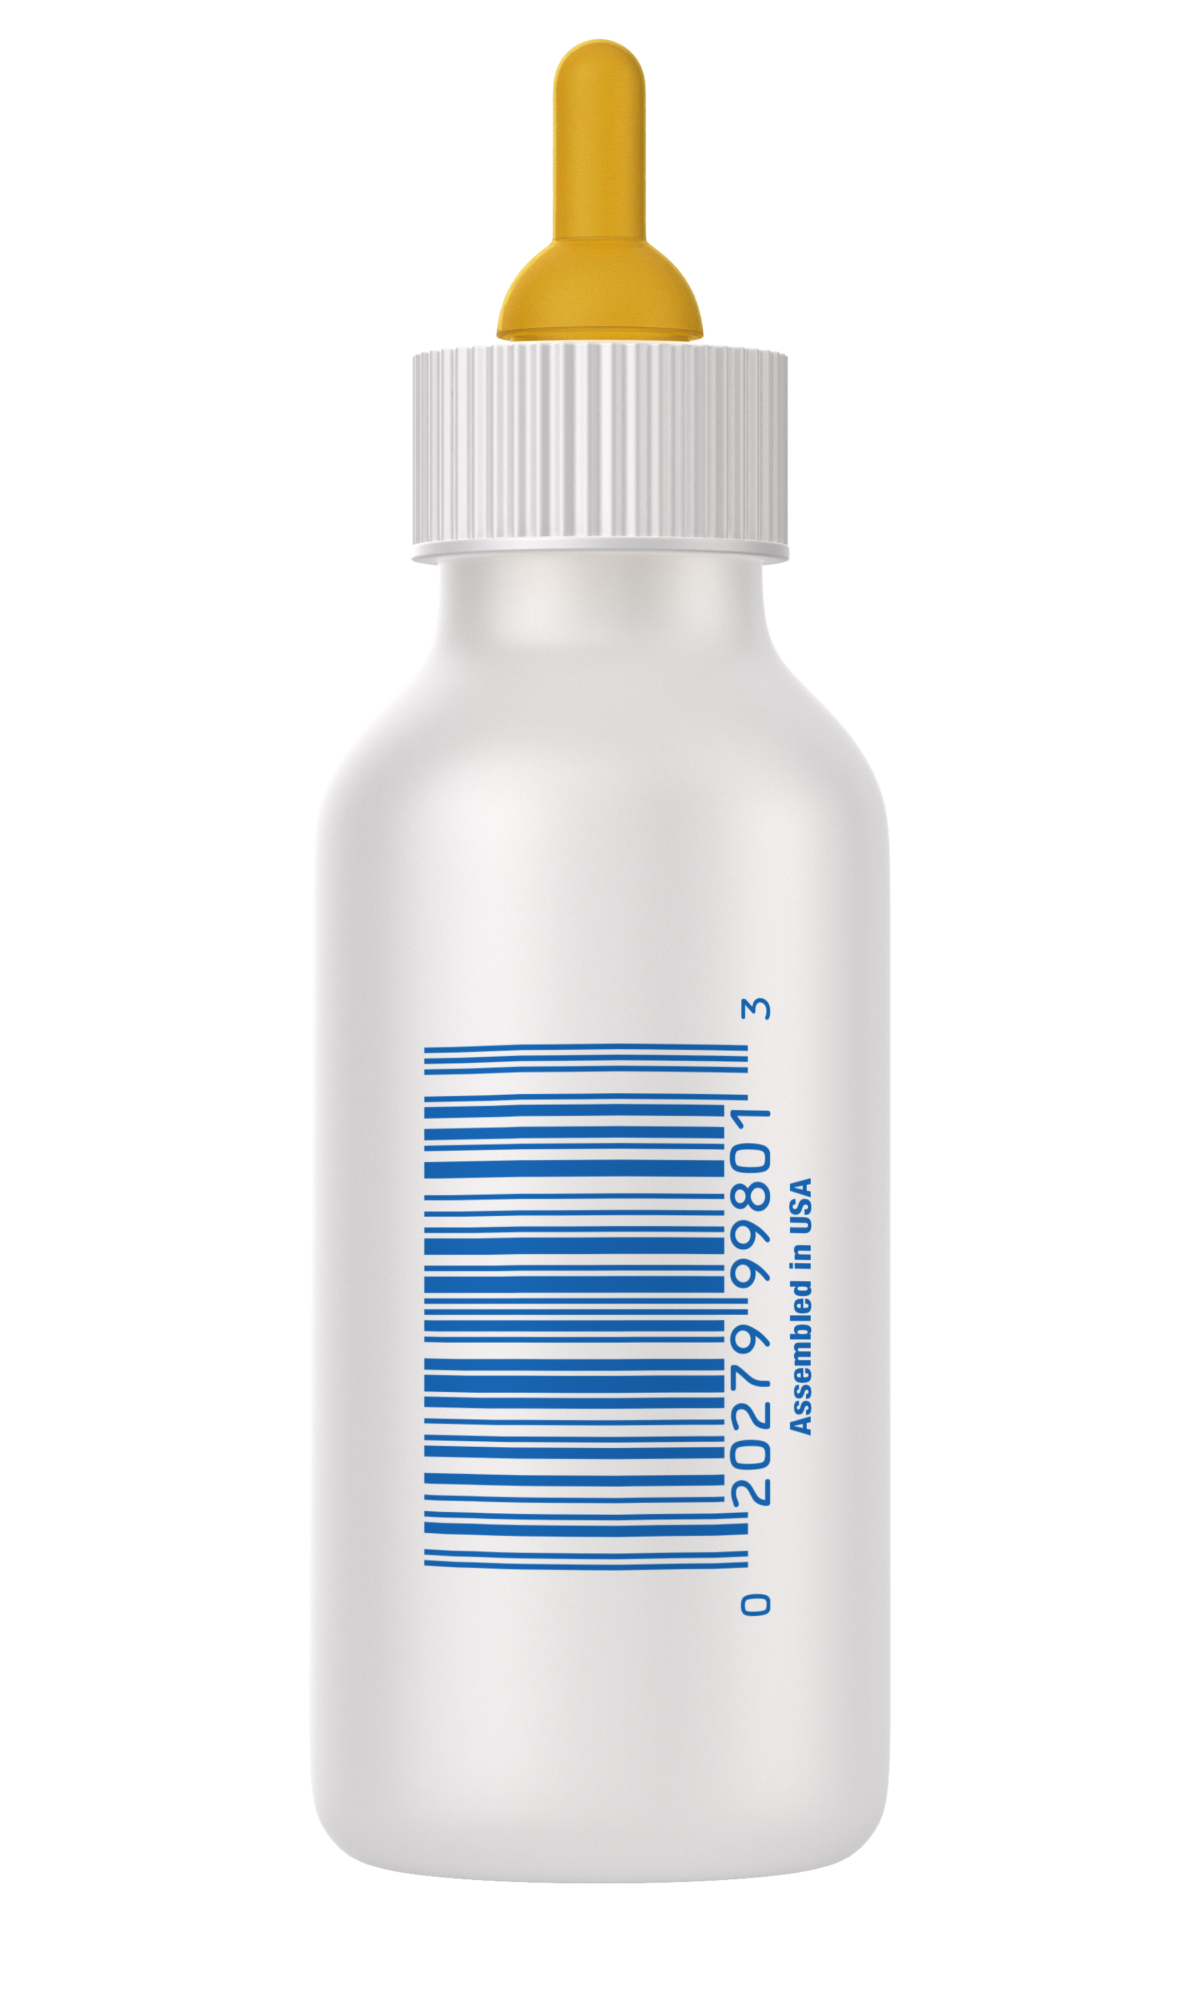 Pet-Ag Nursing Kit 2oz Bottle (Carded)